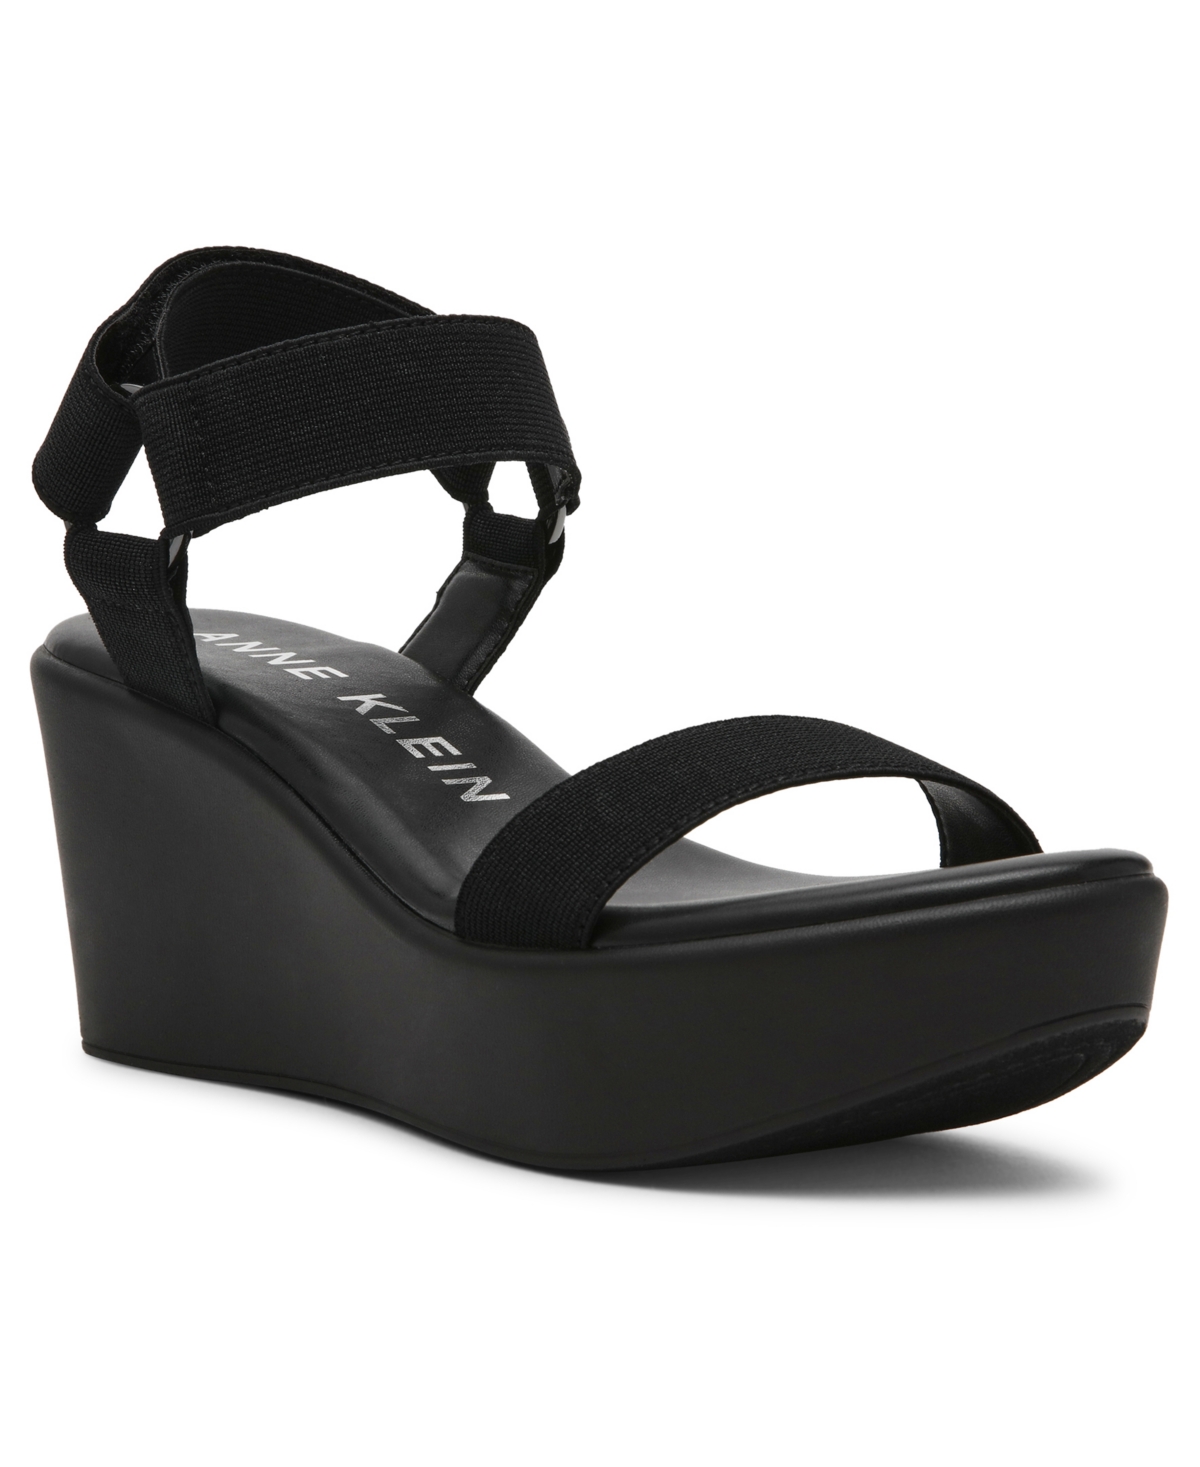 Women's Phi Wedge Sandals - Black